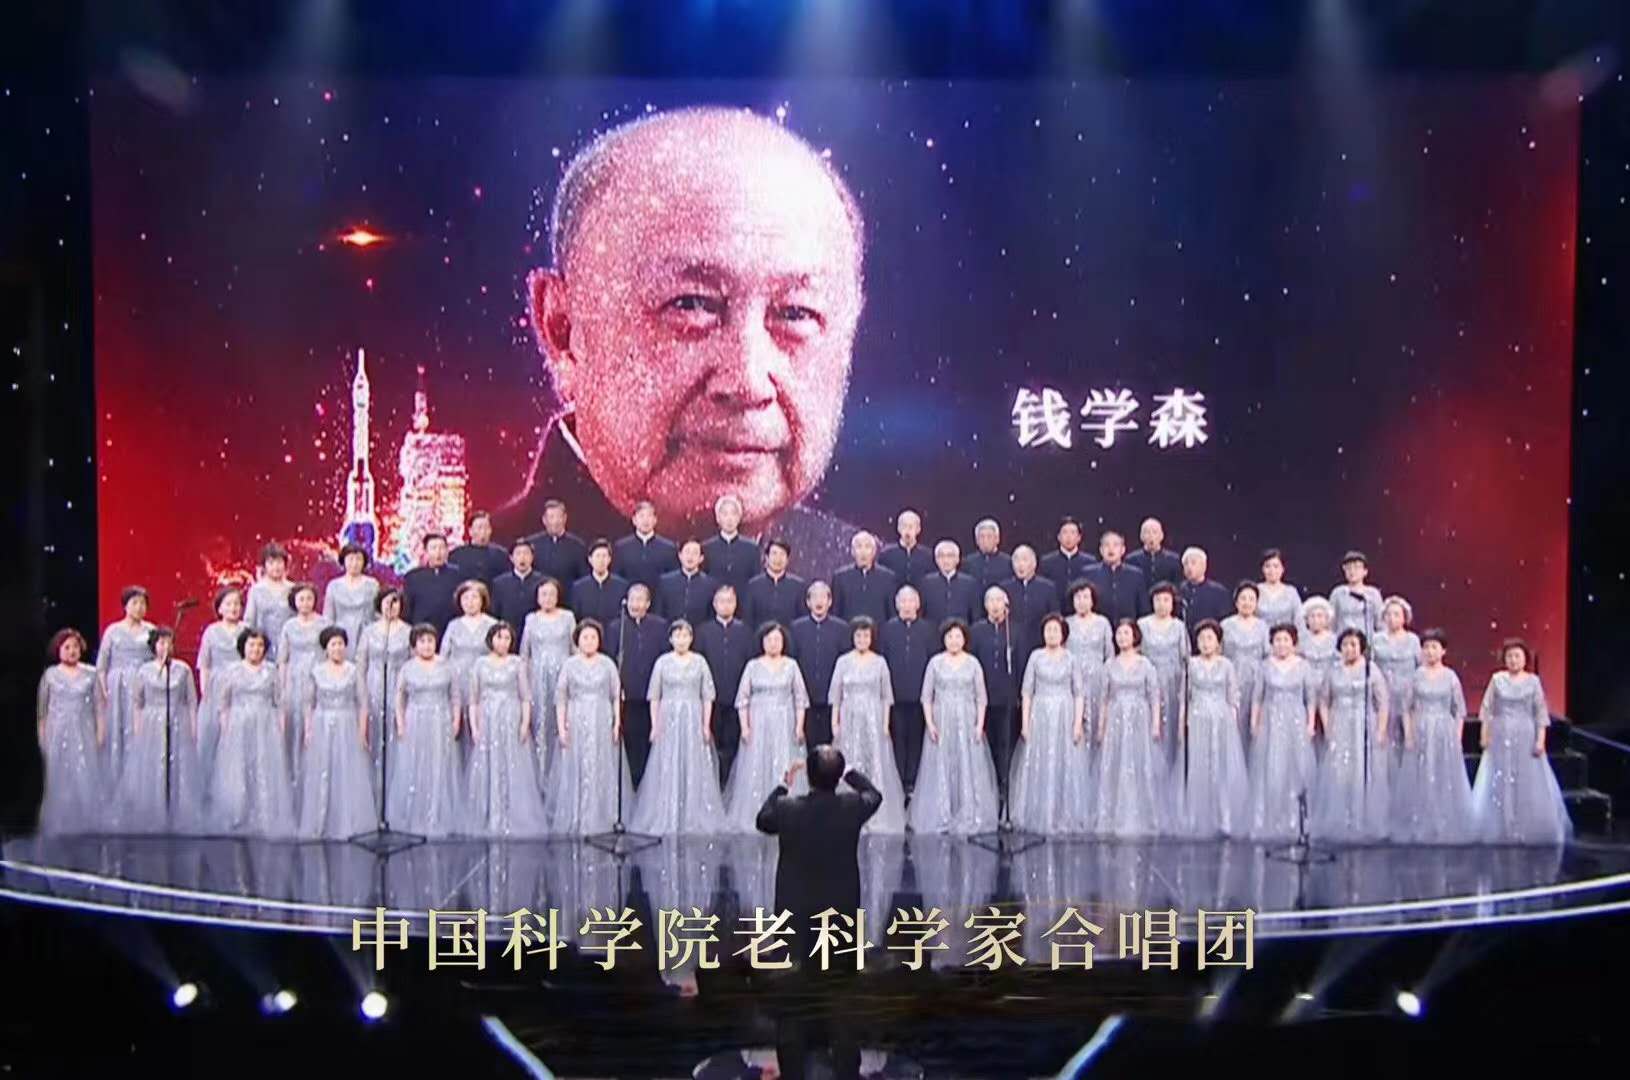 中國科學院老科學家合唱團